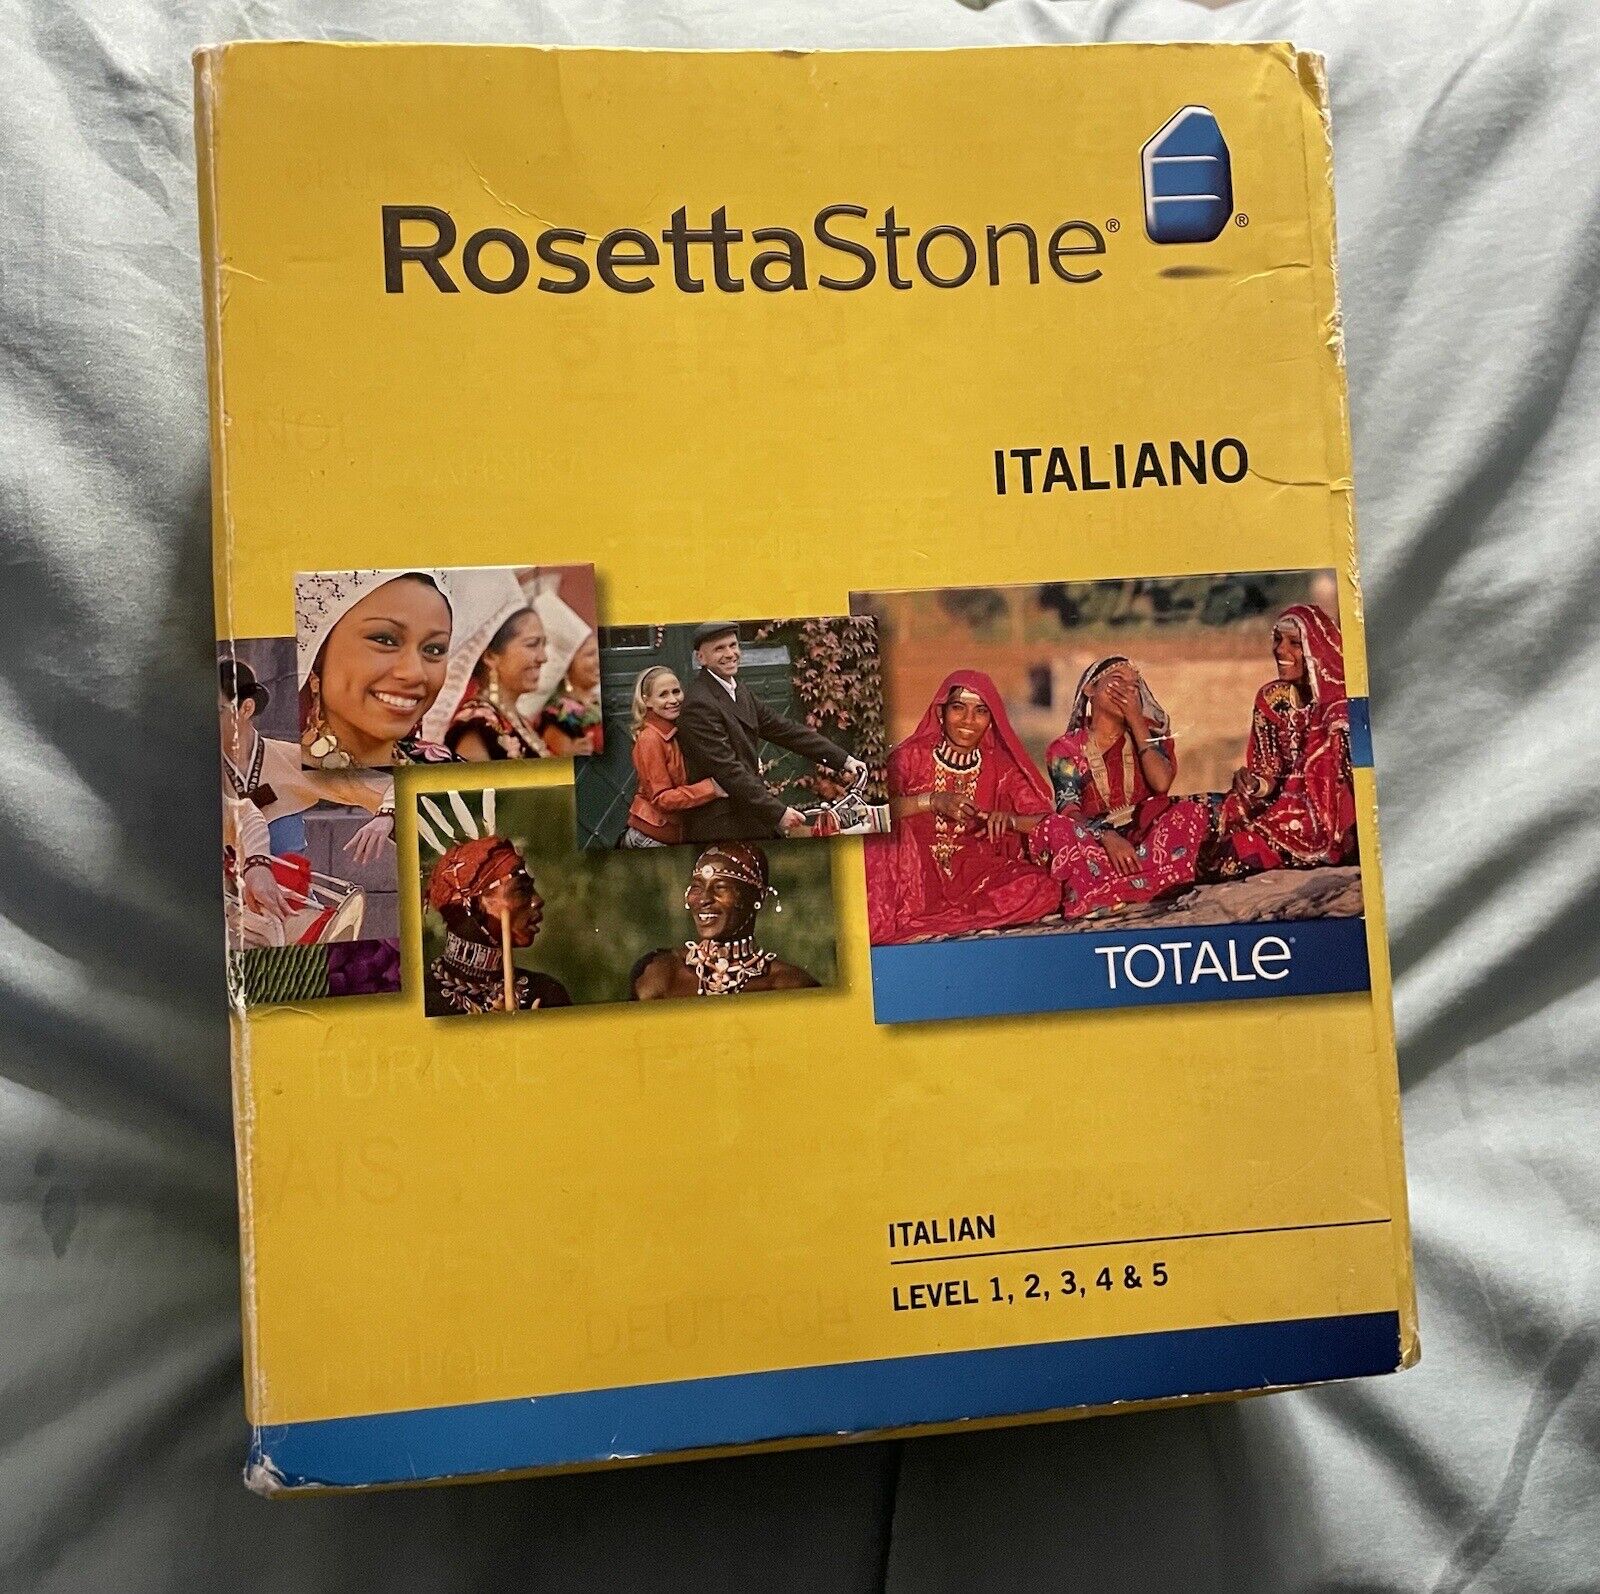 Rosetta Stone Italian Level 1-5 Set (Retail) (1 User) - Full Version for Mac,...